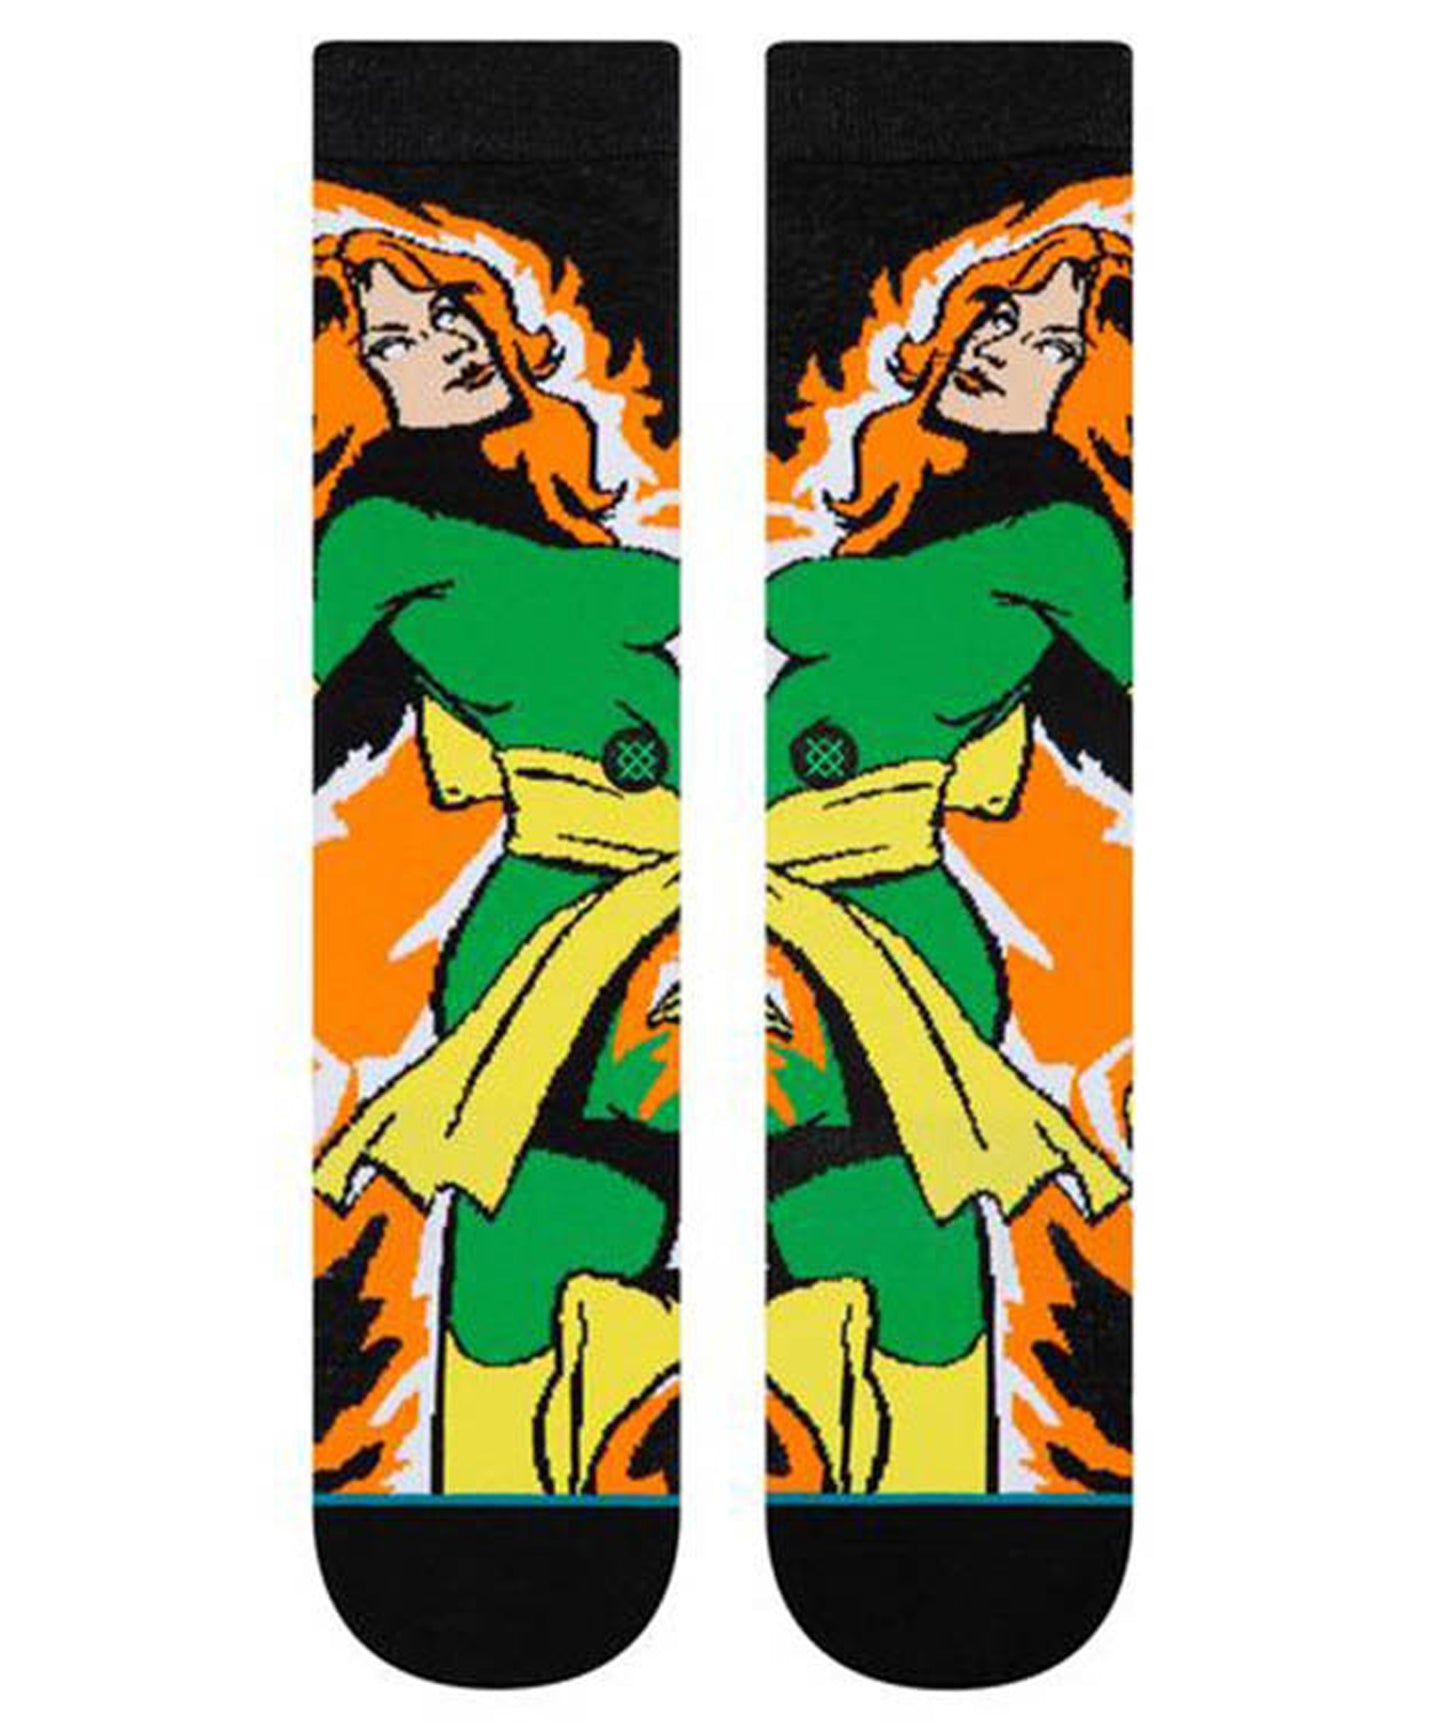 stance-calcetines-jean-grey-basado en los personajes de x-man-calcetín. clásico a 7 pulgadas por encima del tobillo-Soporte de arco elástico-color naranja-verde